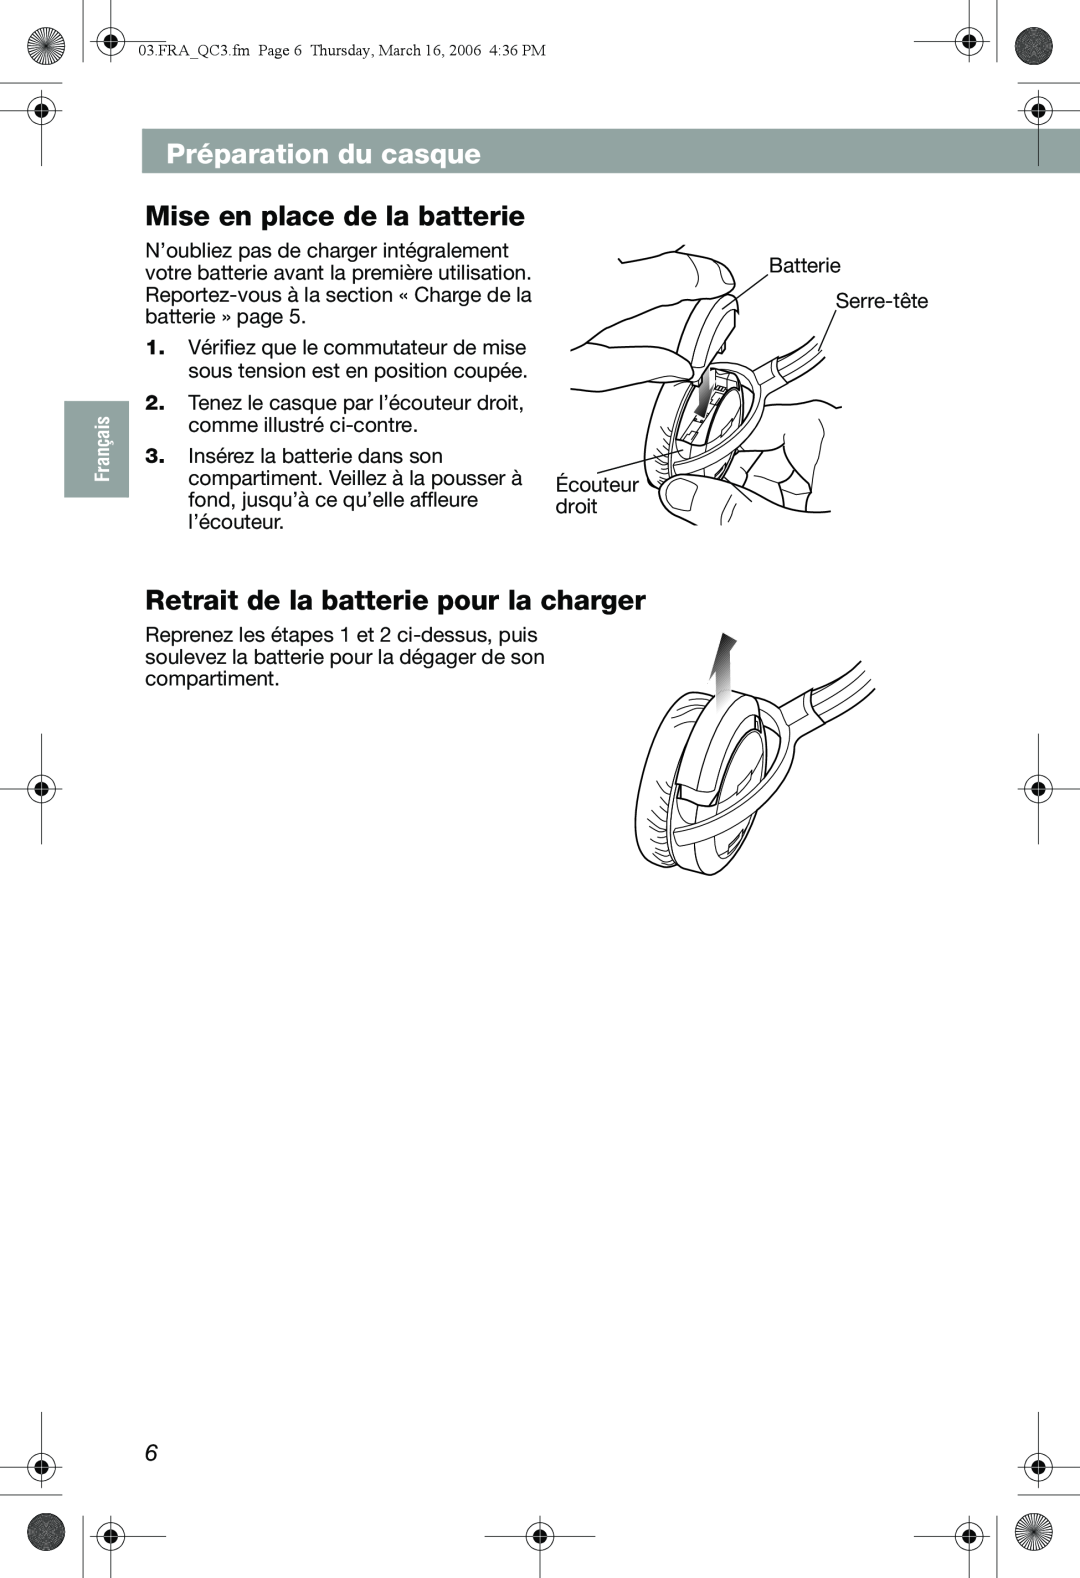 Bose QuietComfort 3 manual Mise en place de la batterie, Retrait de la batterie pour la charger, Préparation du casque 